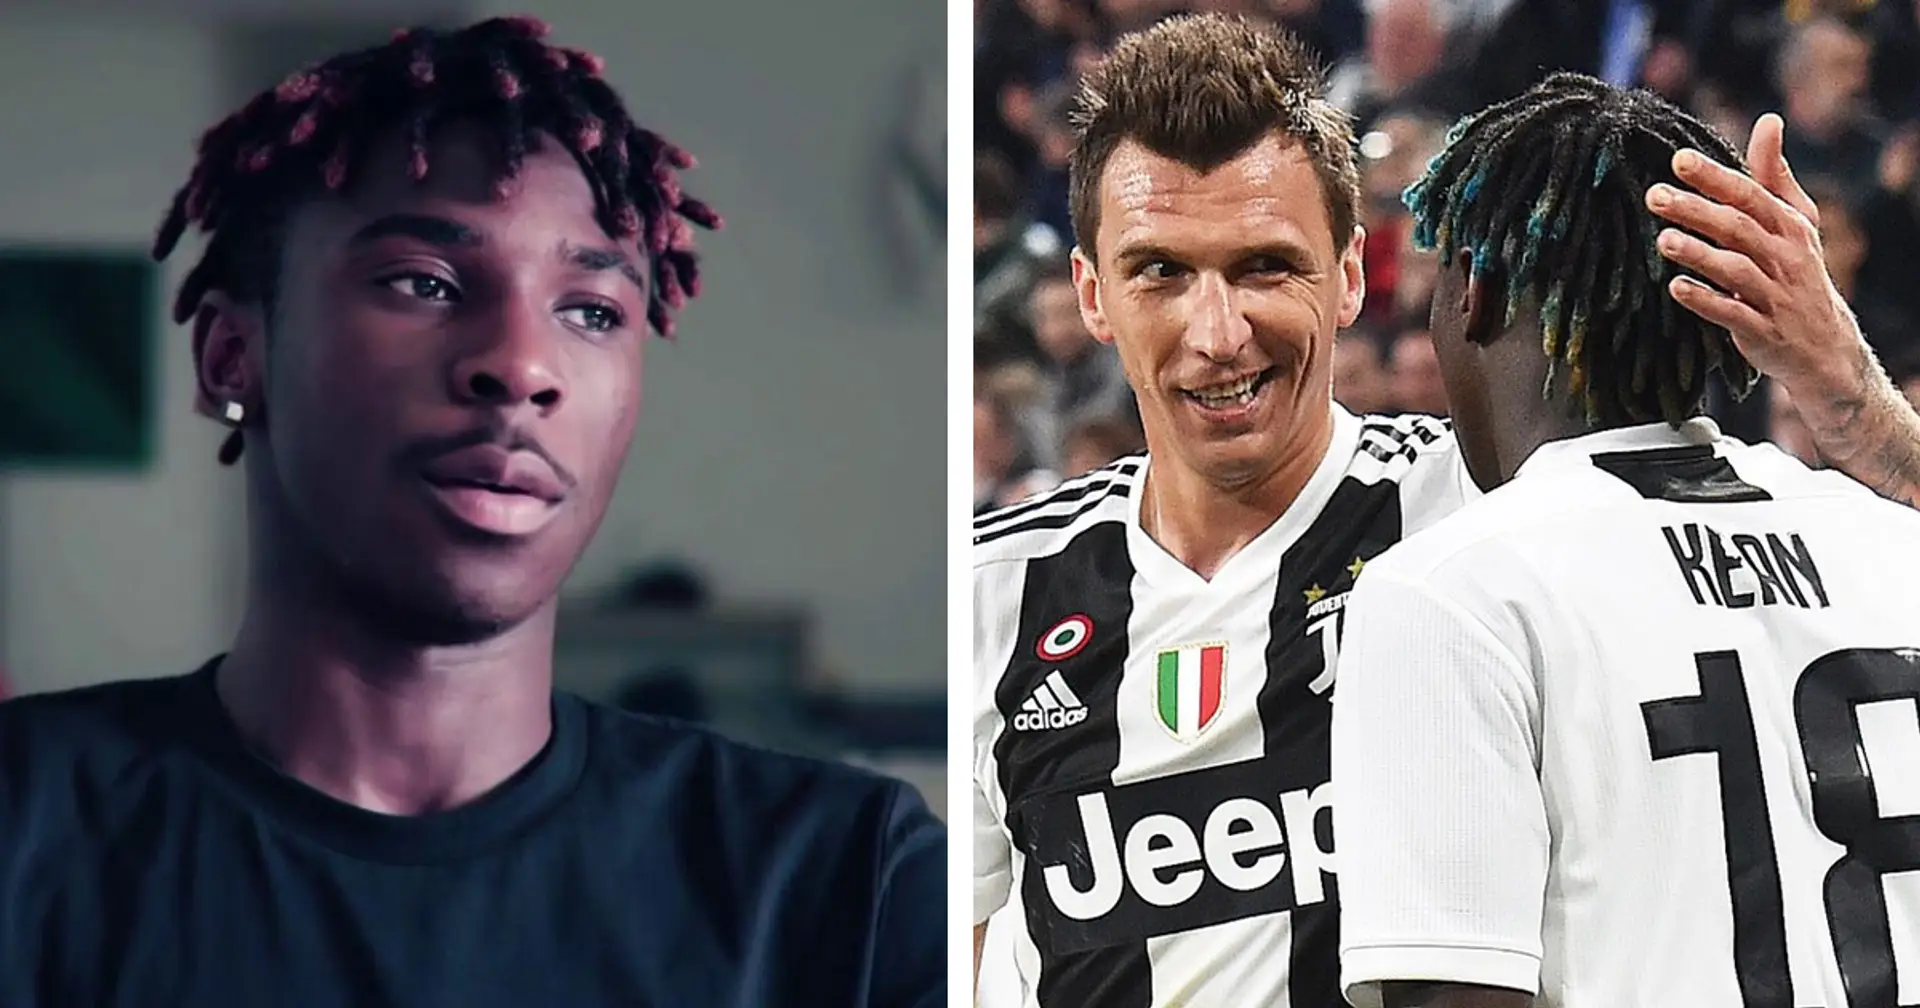 "Avevo 15 anni, vi svelo cosa mi disse Mandzukic": Kean racconta un aneddoto del passato alla Juventus